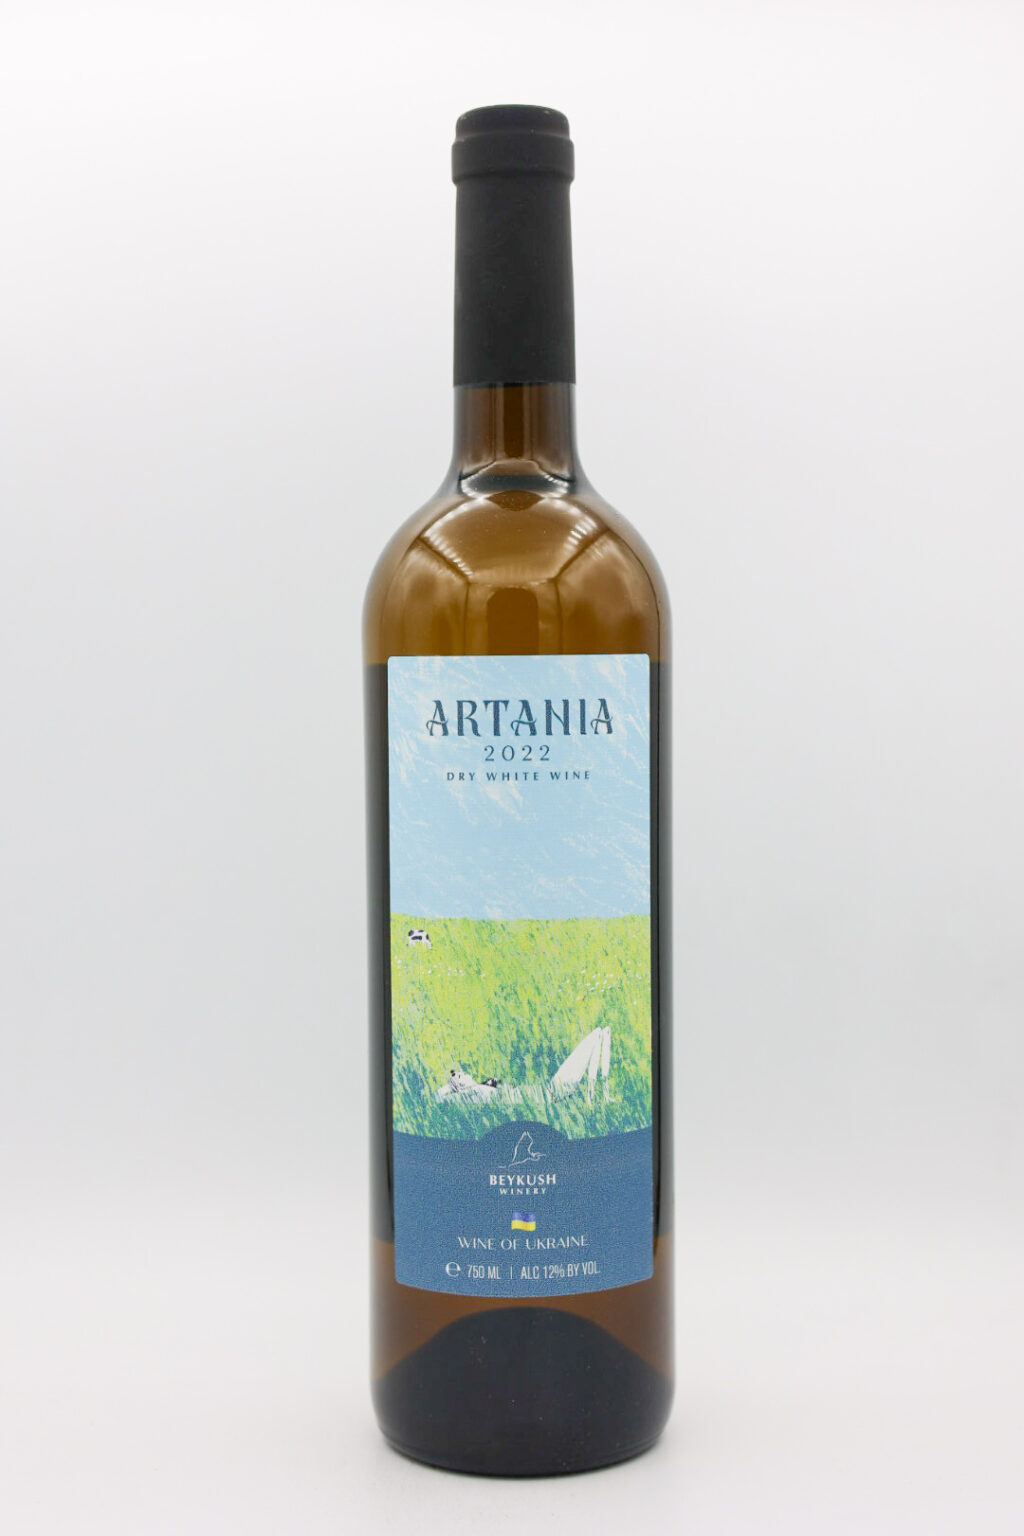 Beykush Winery Artania White Blend 2022